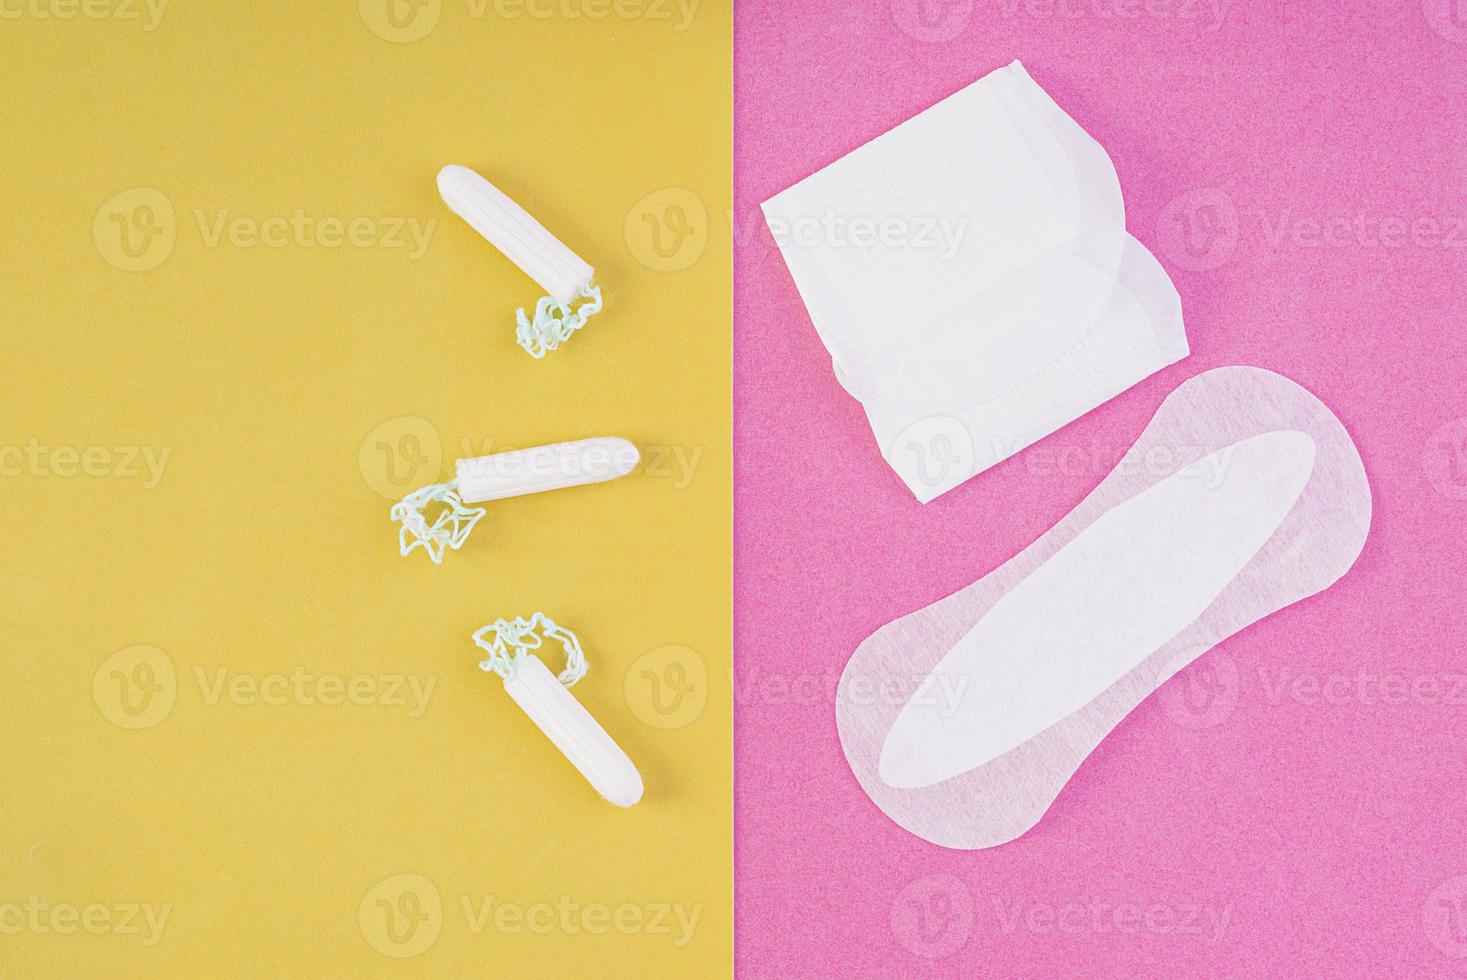 soins d'hygiène pendant les jours critiques. choisir entre un tampon et une serviette hygiénique. cycle menstruel. produits d'hygiène pour femmes. vue de dessus photo